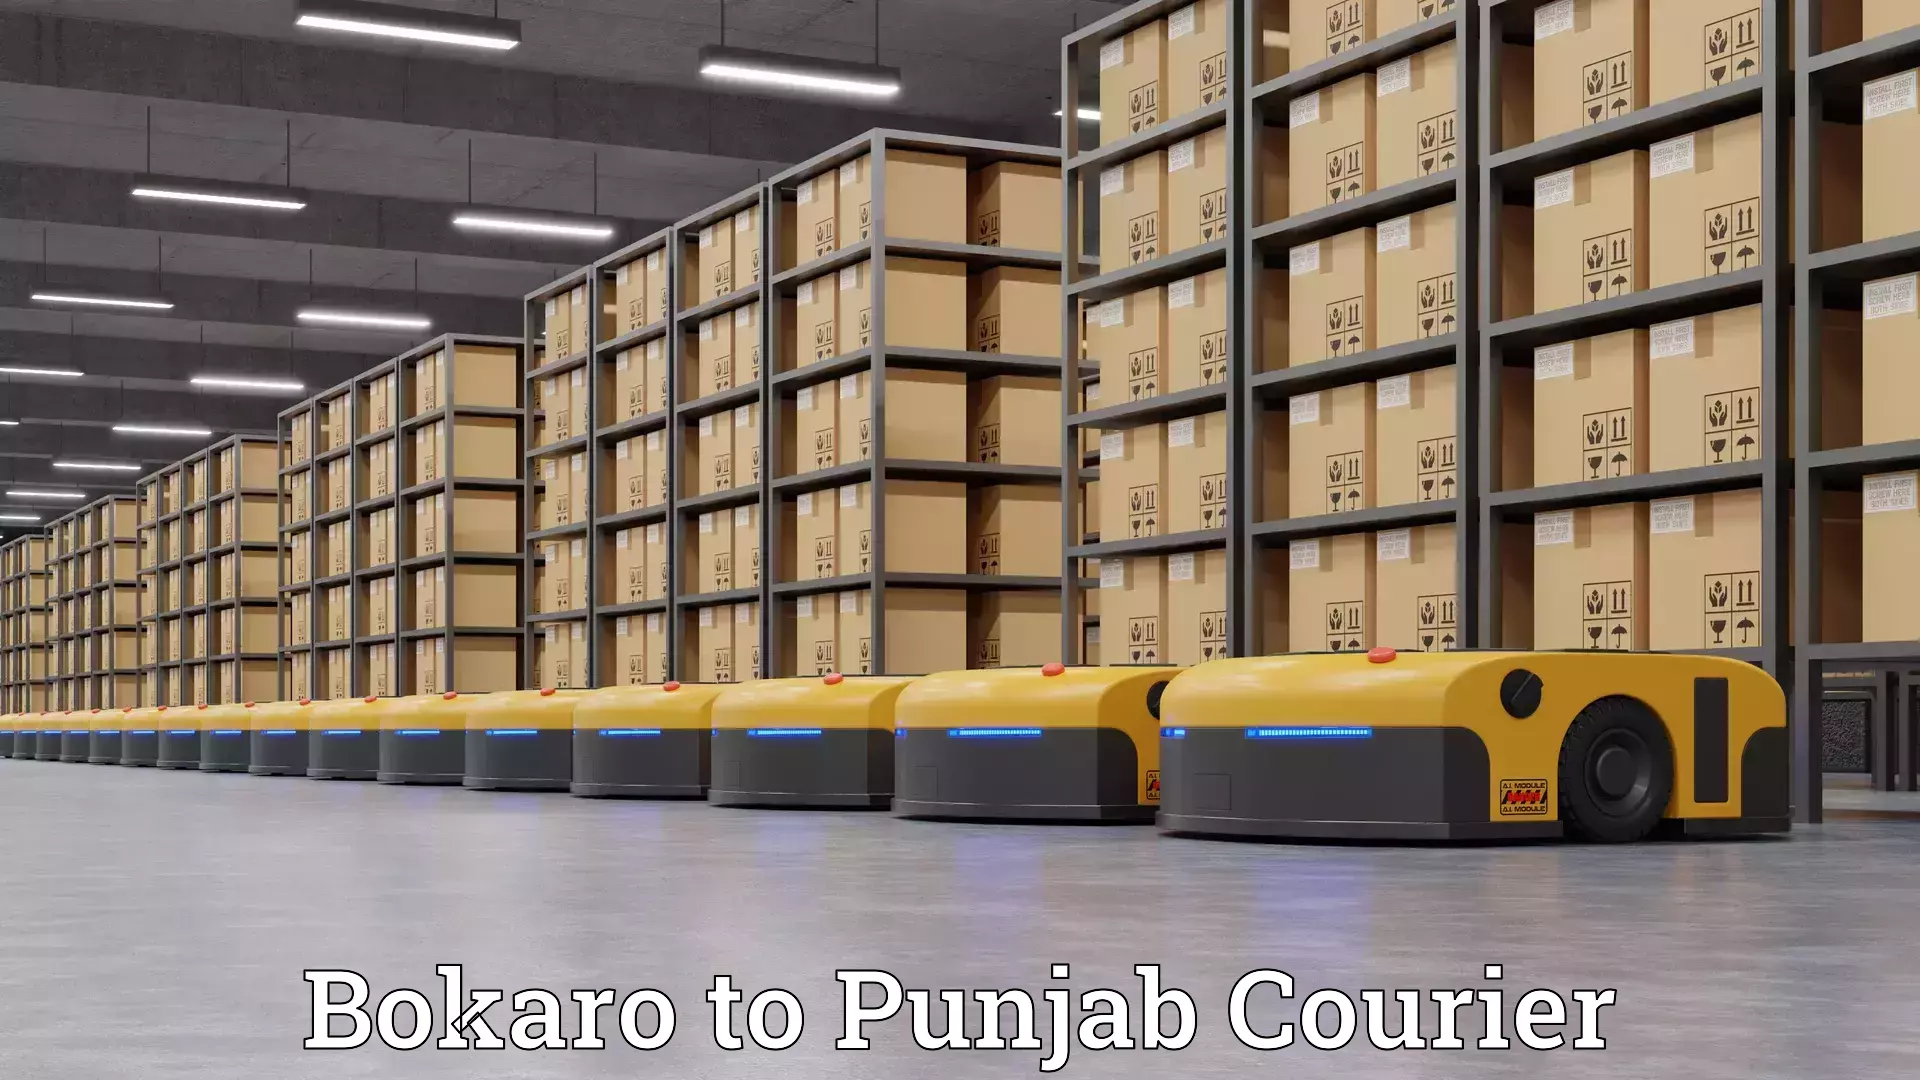 Moving and packing experts Bokaro to Punjab